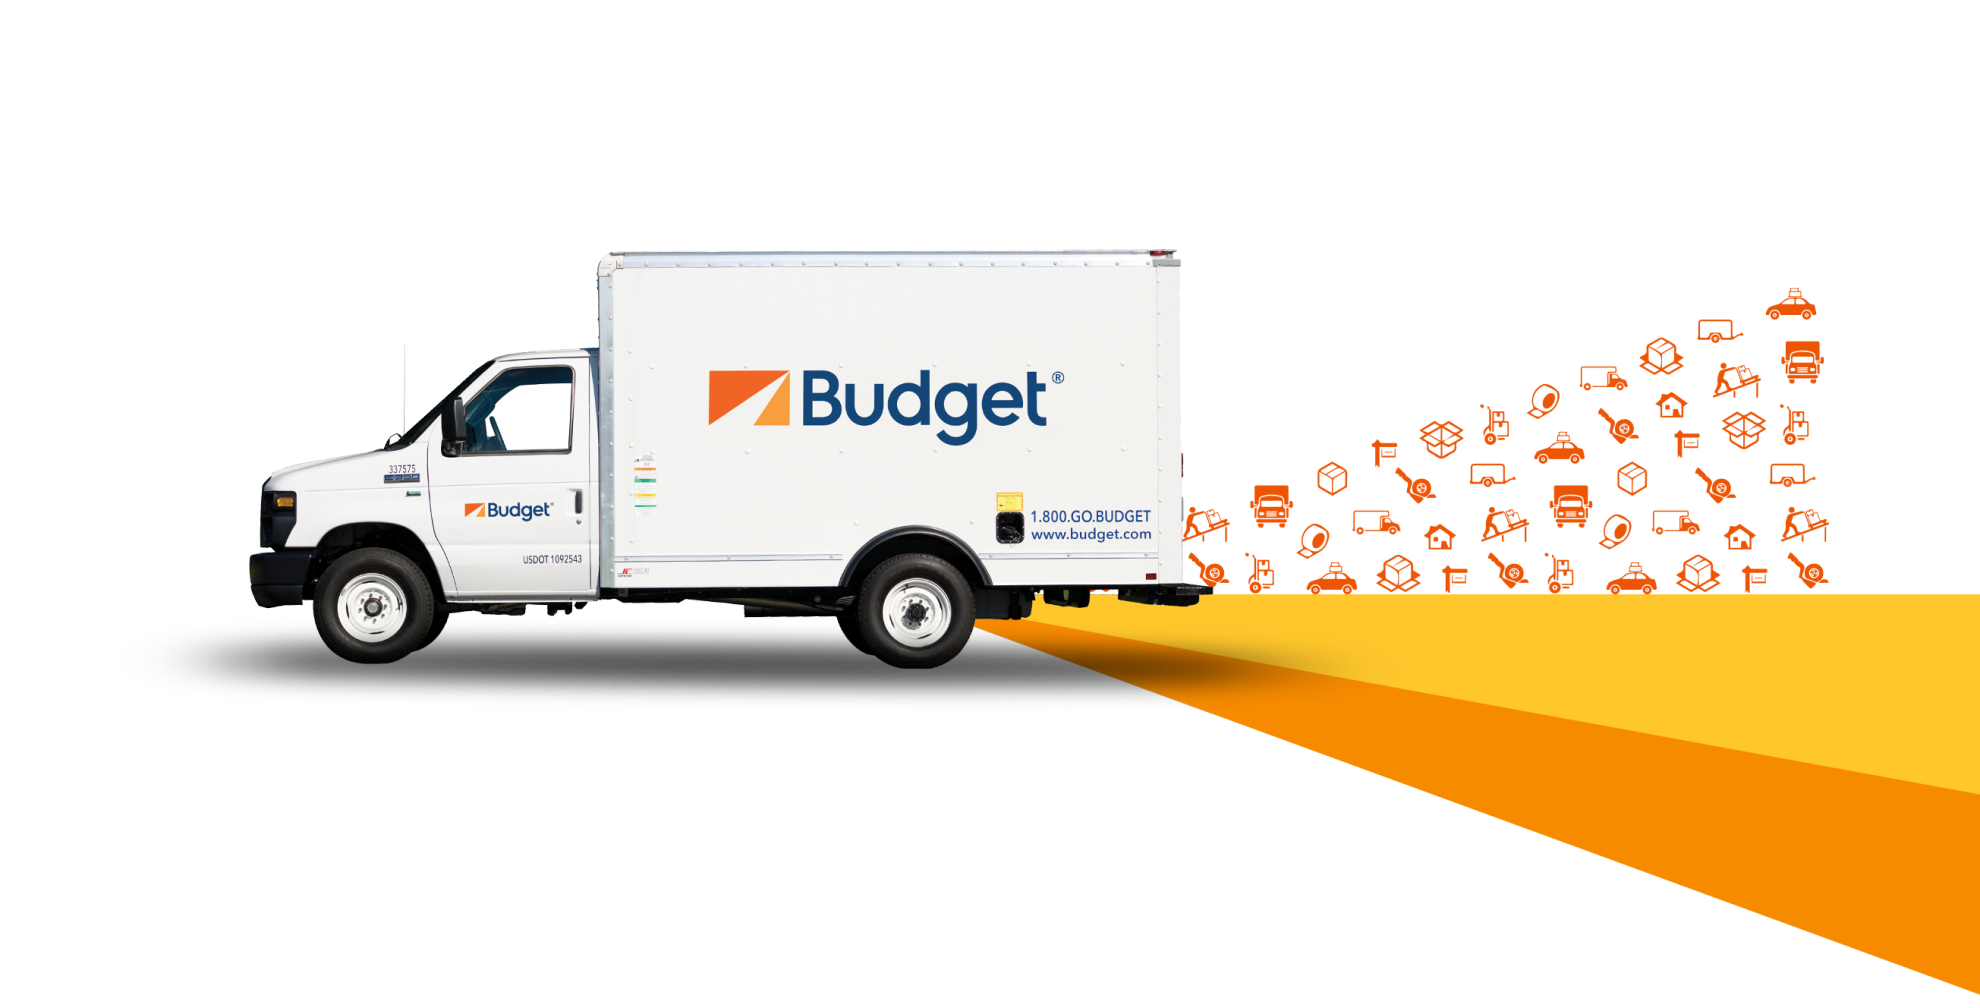 budget moving van hire